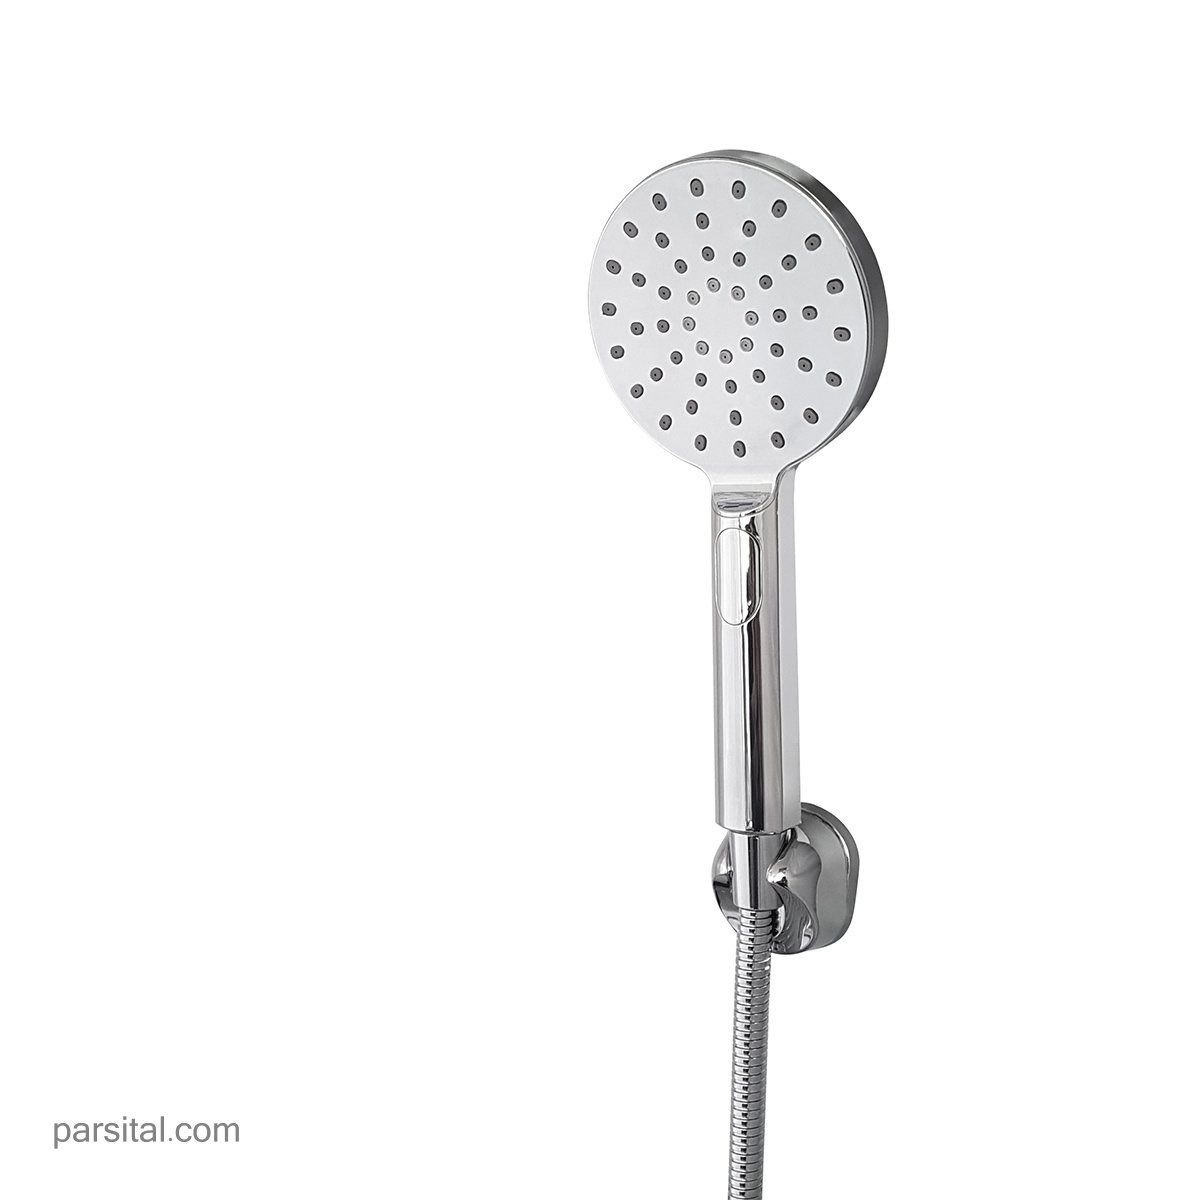 لوازم (متعلقات) حمام توکار کی دبلیو سی مدل زو تیپ 4 مشکی